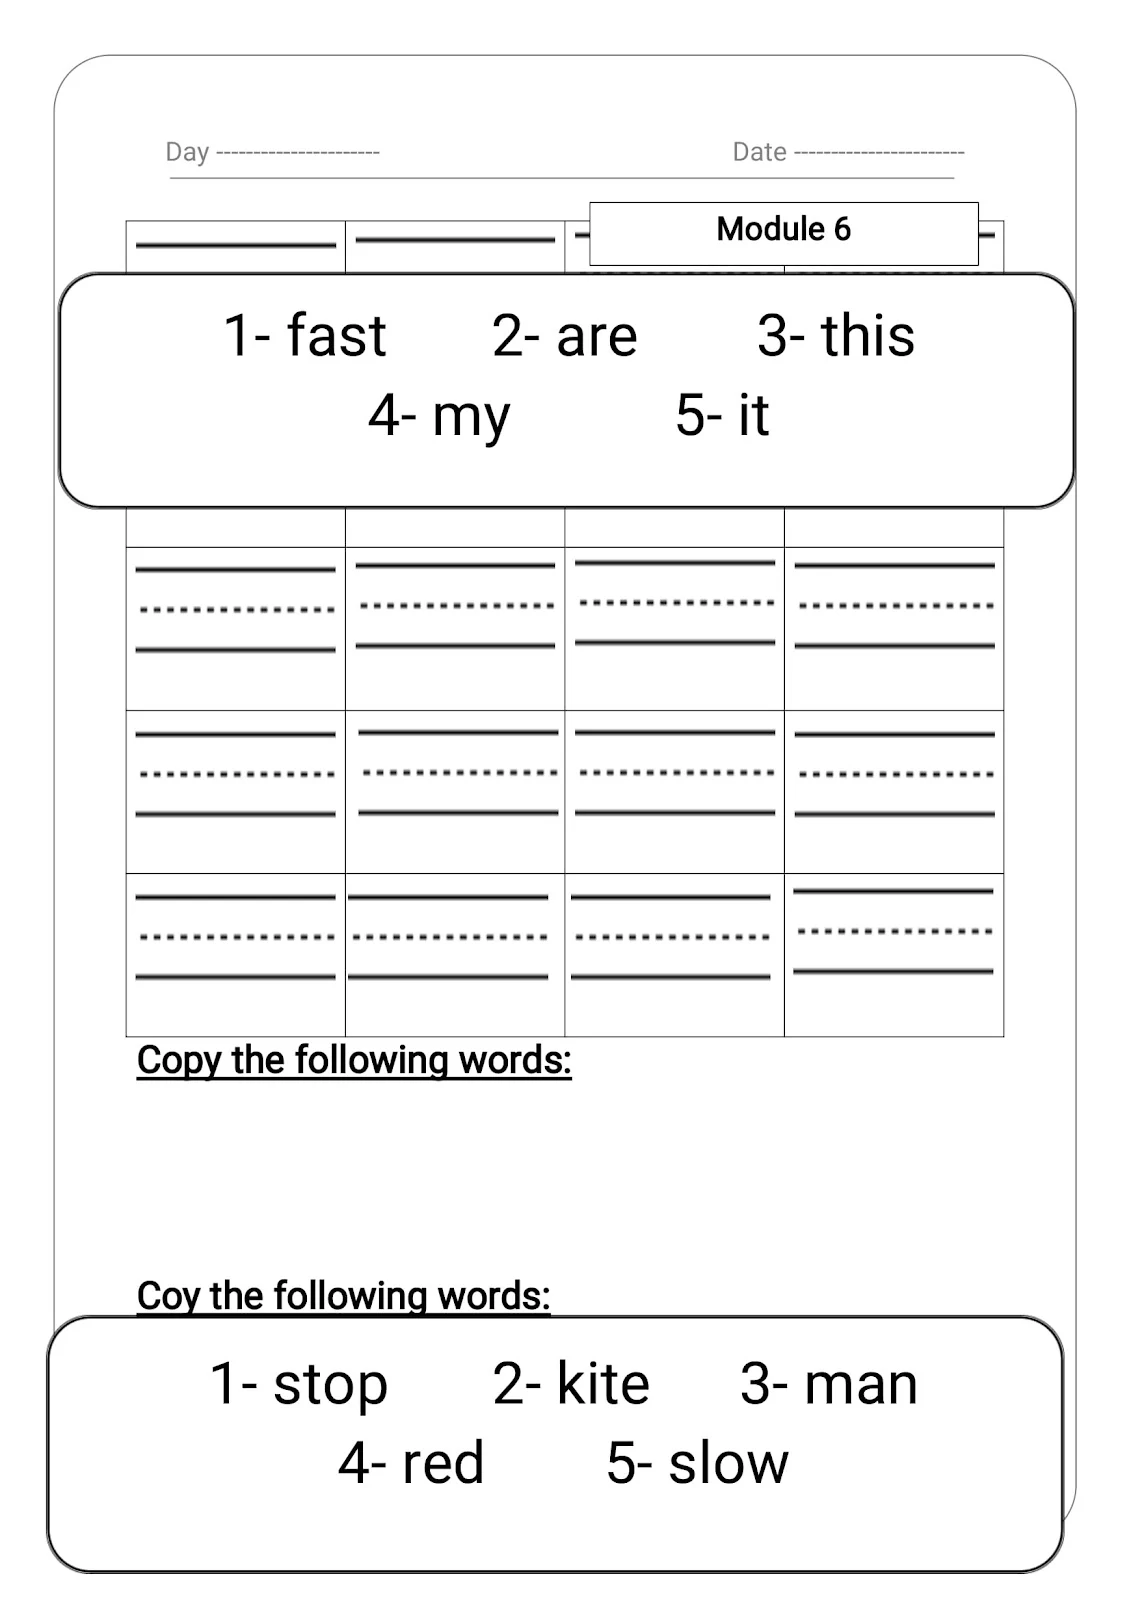 الملزمة الافضل على الاطلاق لحفظ الكلمات باللغة الإنجليزية pdf تحميل مباشر